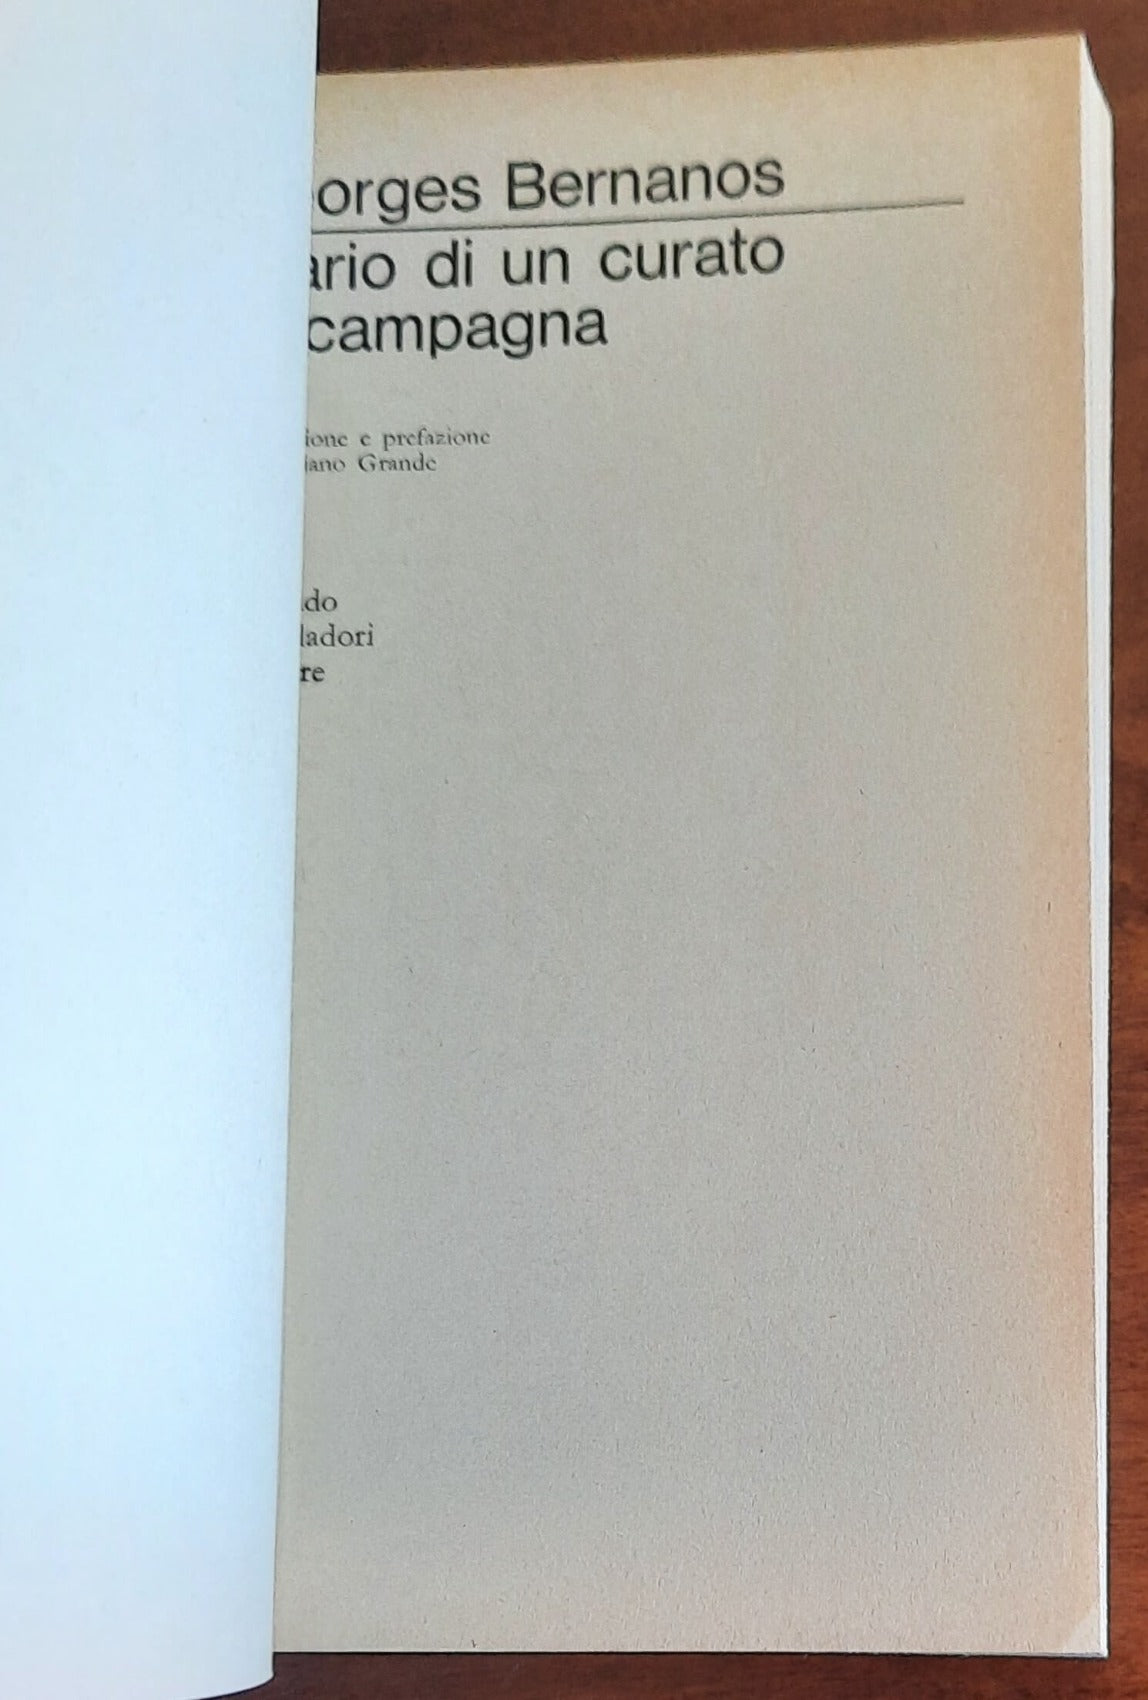 Diario di un curato di campagna - di Georges Bernanos - Mondadori